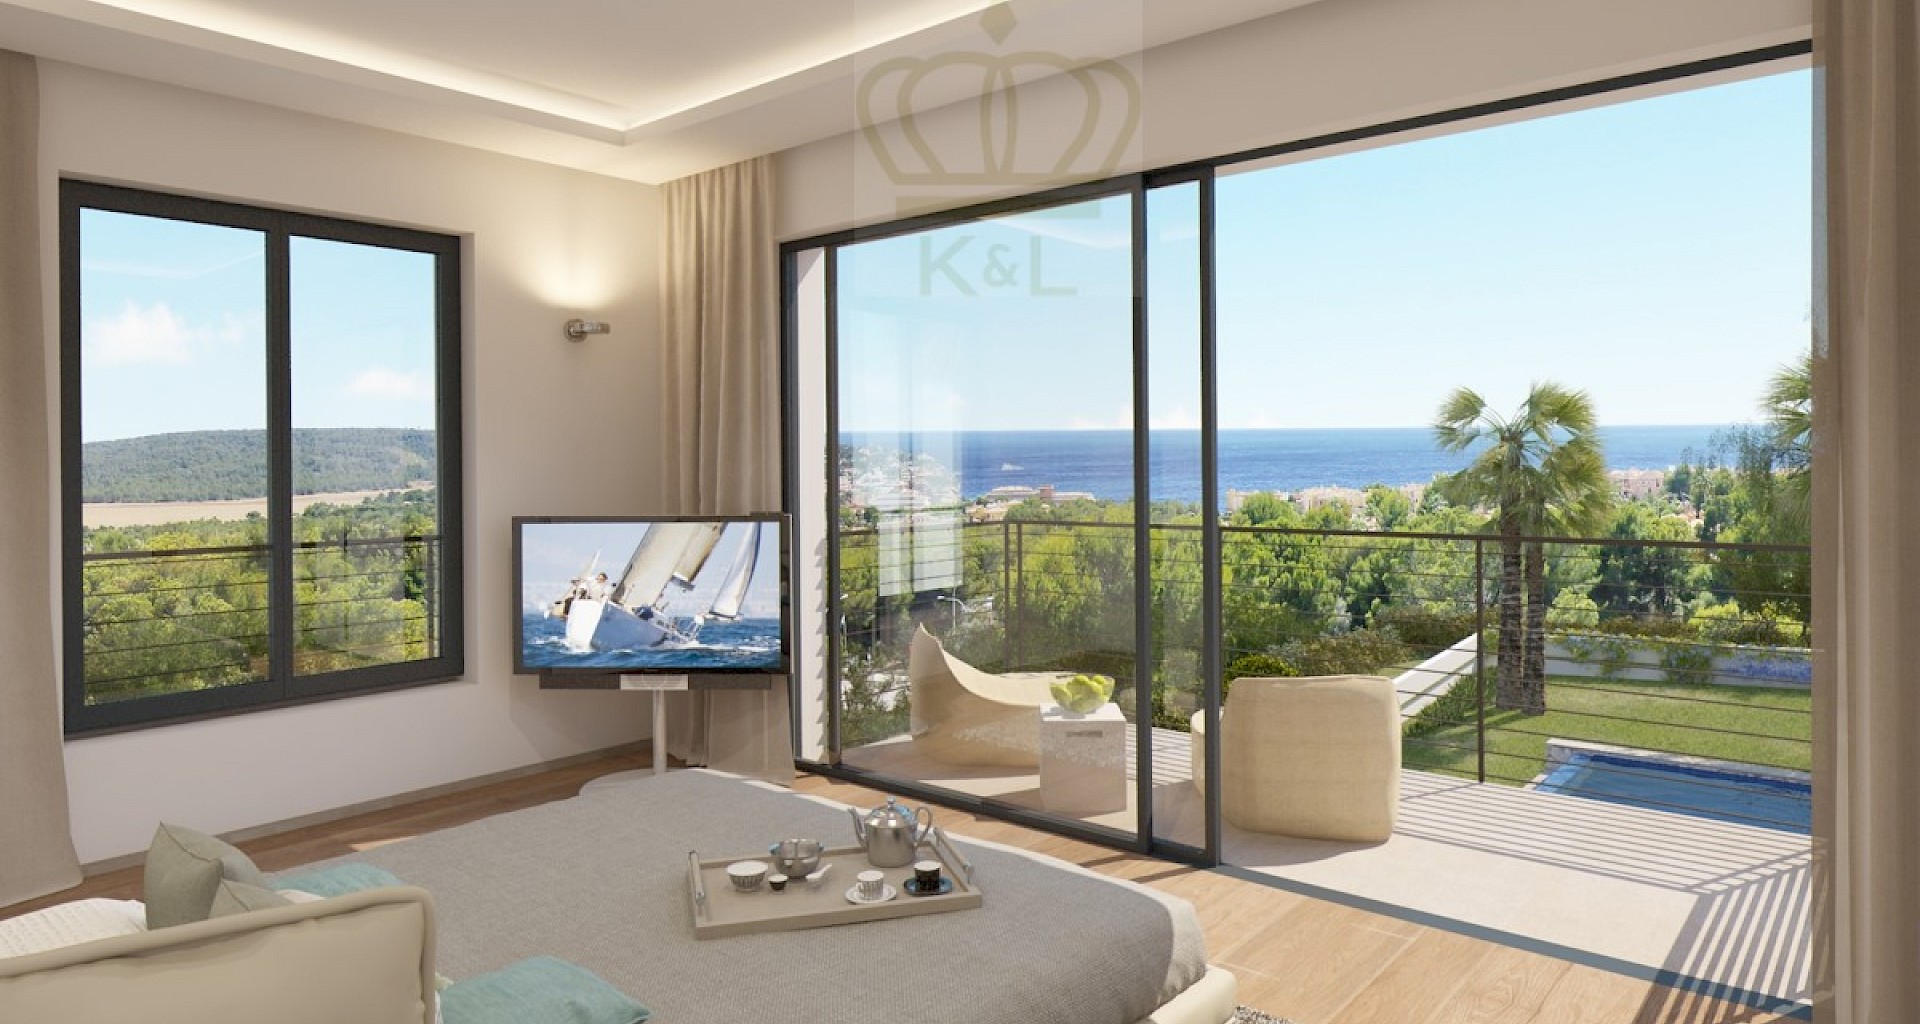 KROHN & LUEDEMANN Moderne Villa in Santa Ponsa mit Fertigstellung in 2021 